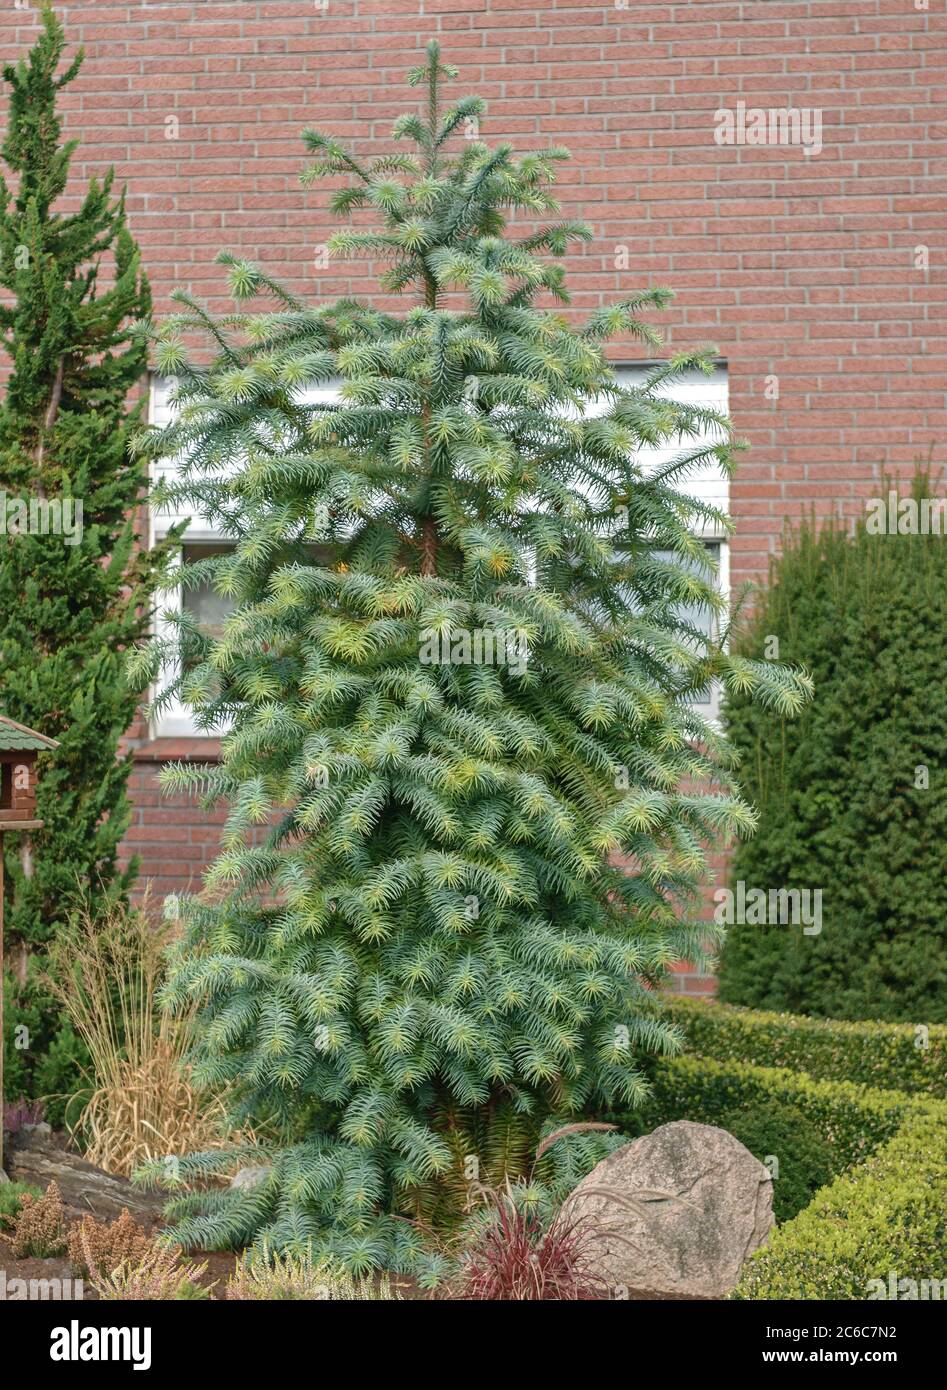 Chinesische Spiesstanne, Cunninghamia lanceolata Glauca, Chinese fir, Cunninghamia lanceolata Glauca Stock Photo